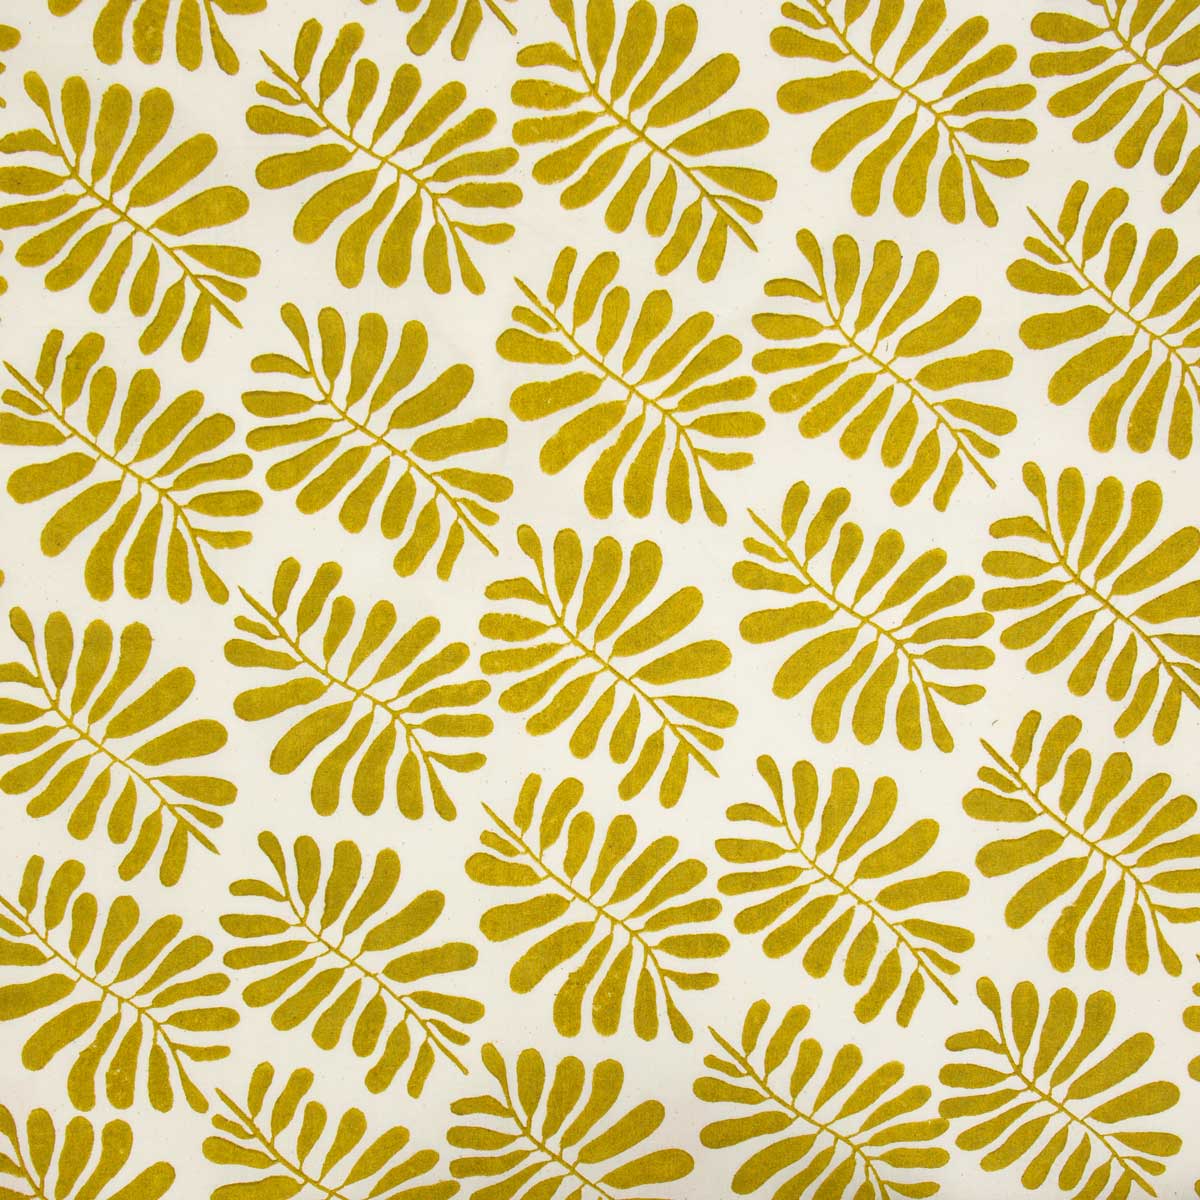 LEAF Fabric, mustard